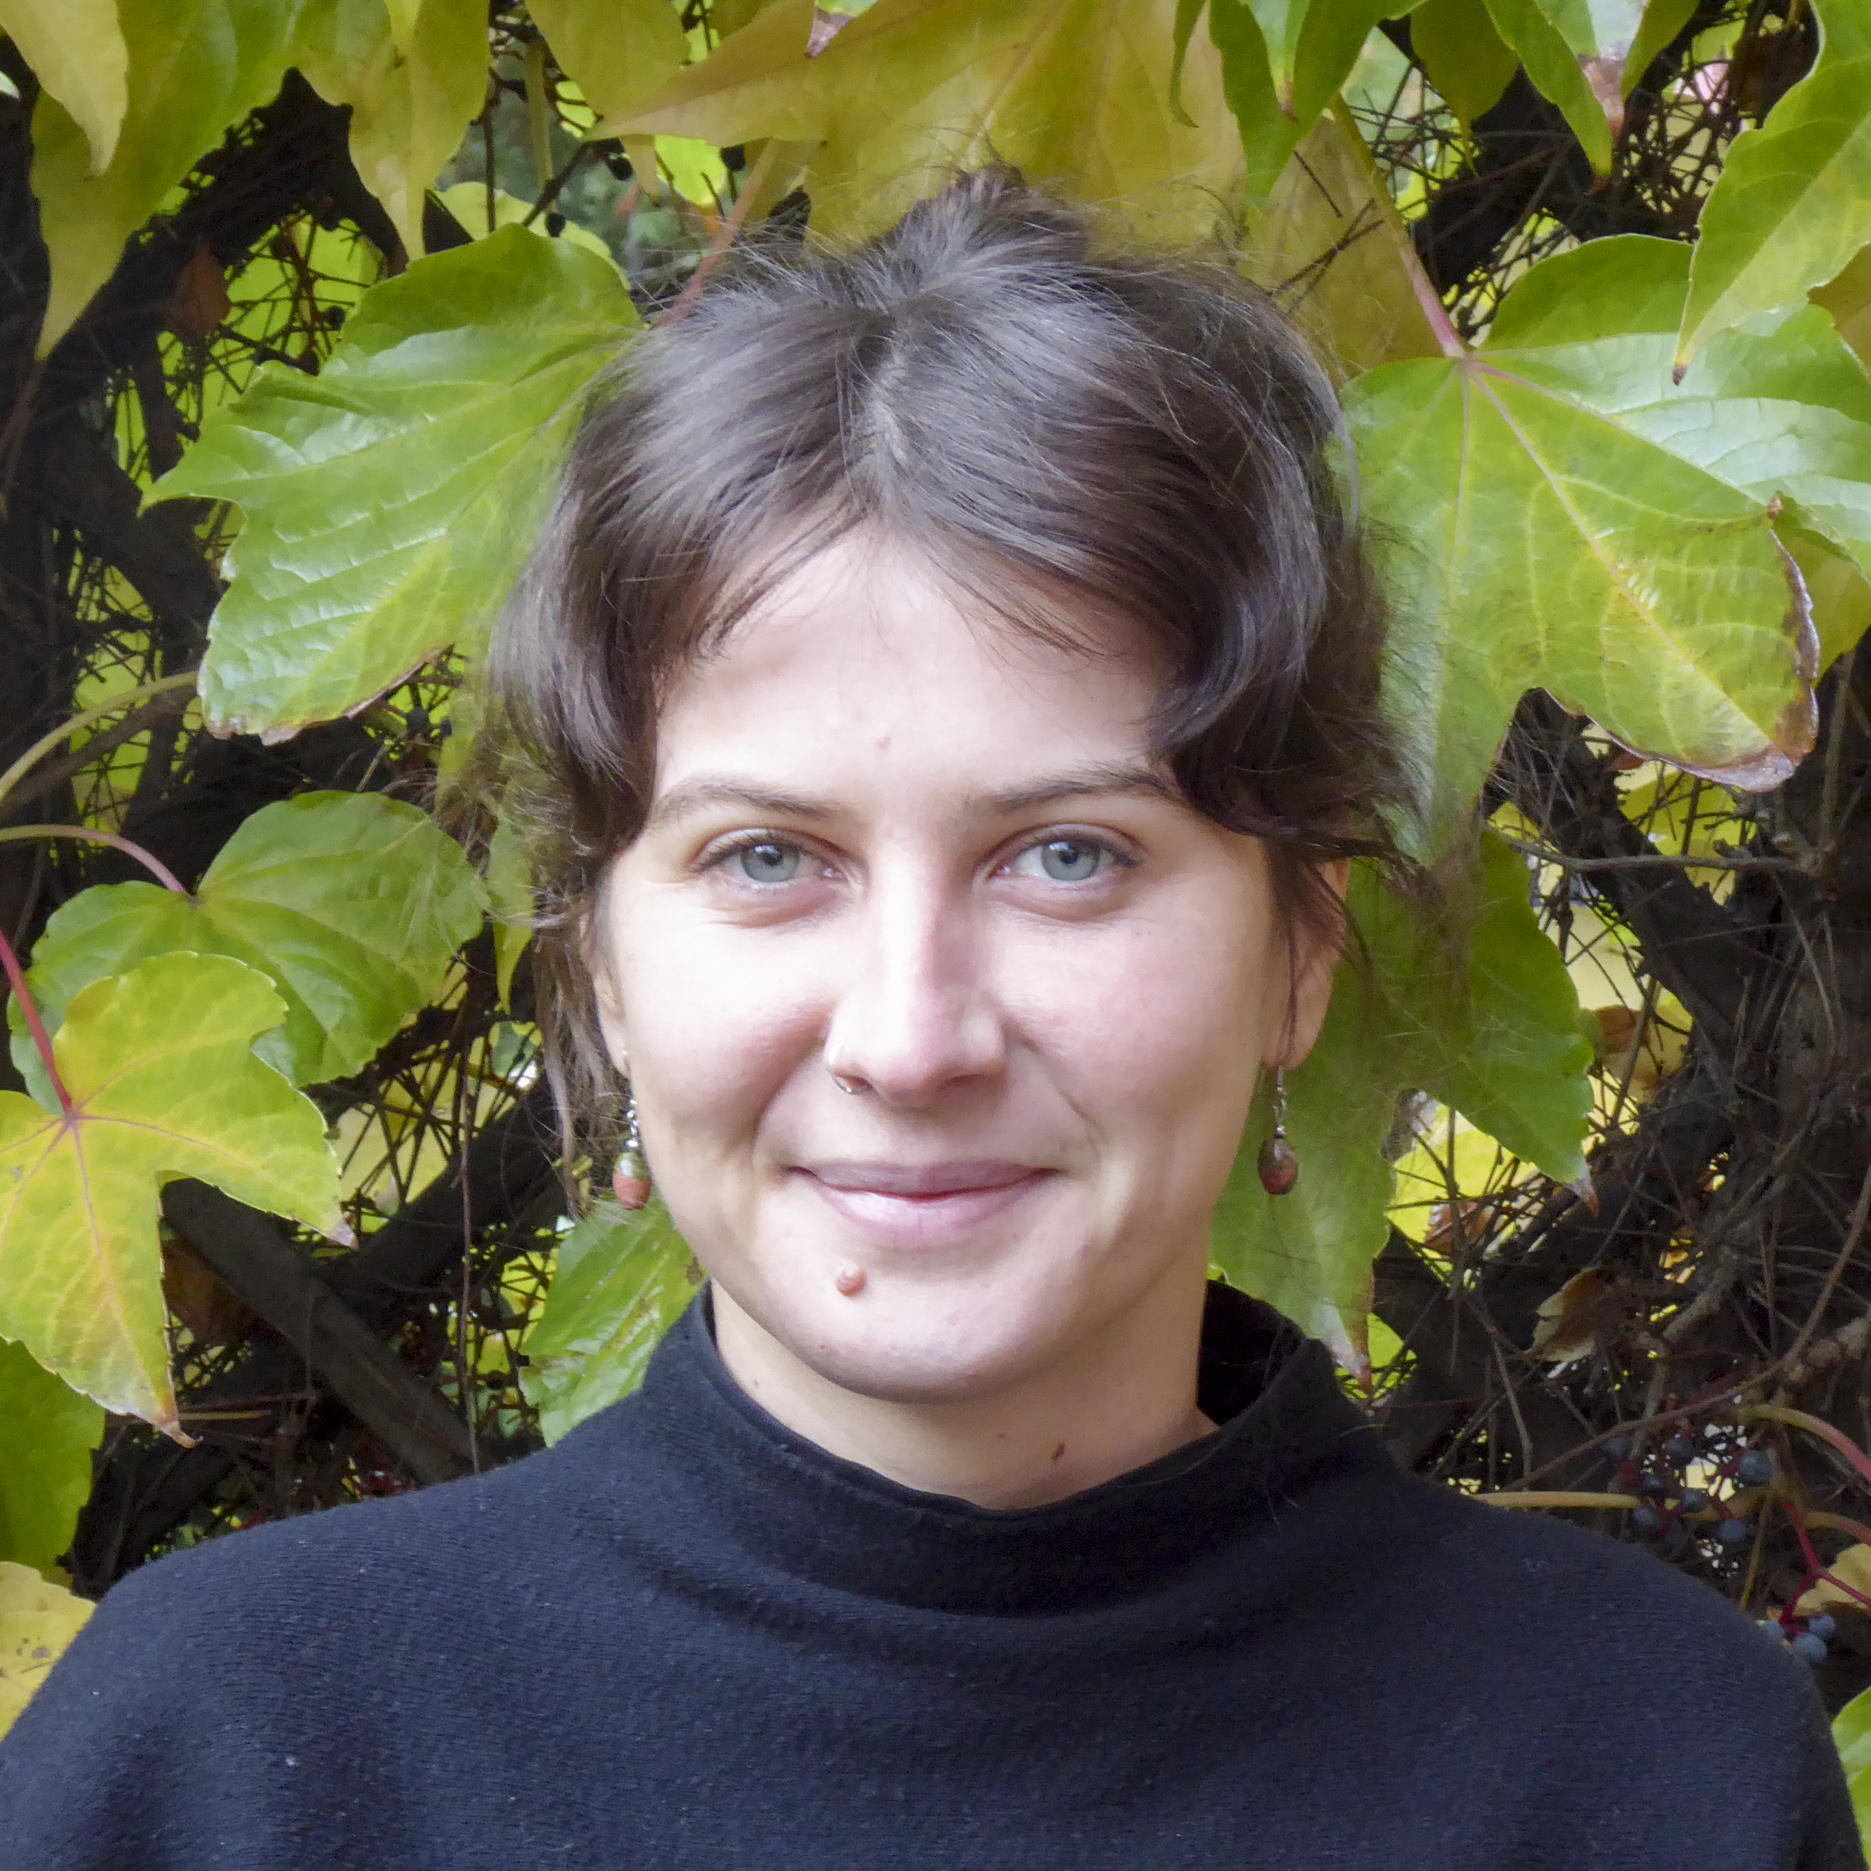 Portrait von Kollektivmitglied Maike vor einem Baum mit grünen und gelben Blättern. Sie trägt einen schwarzen Pullover und orangene Ohrringe und lächelt in die Kamera.